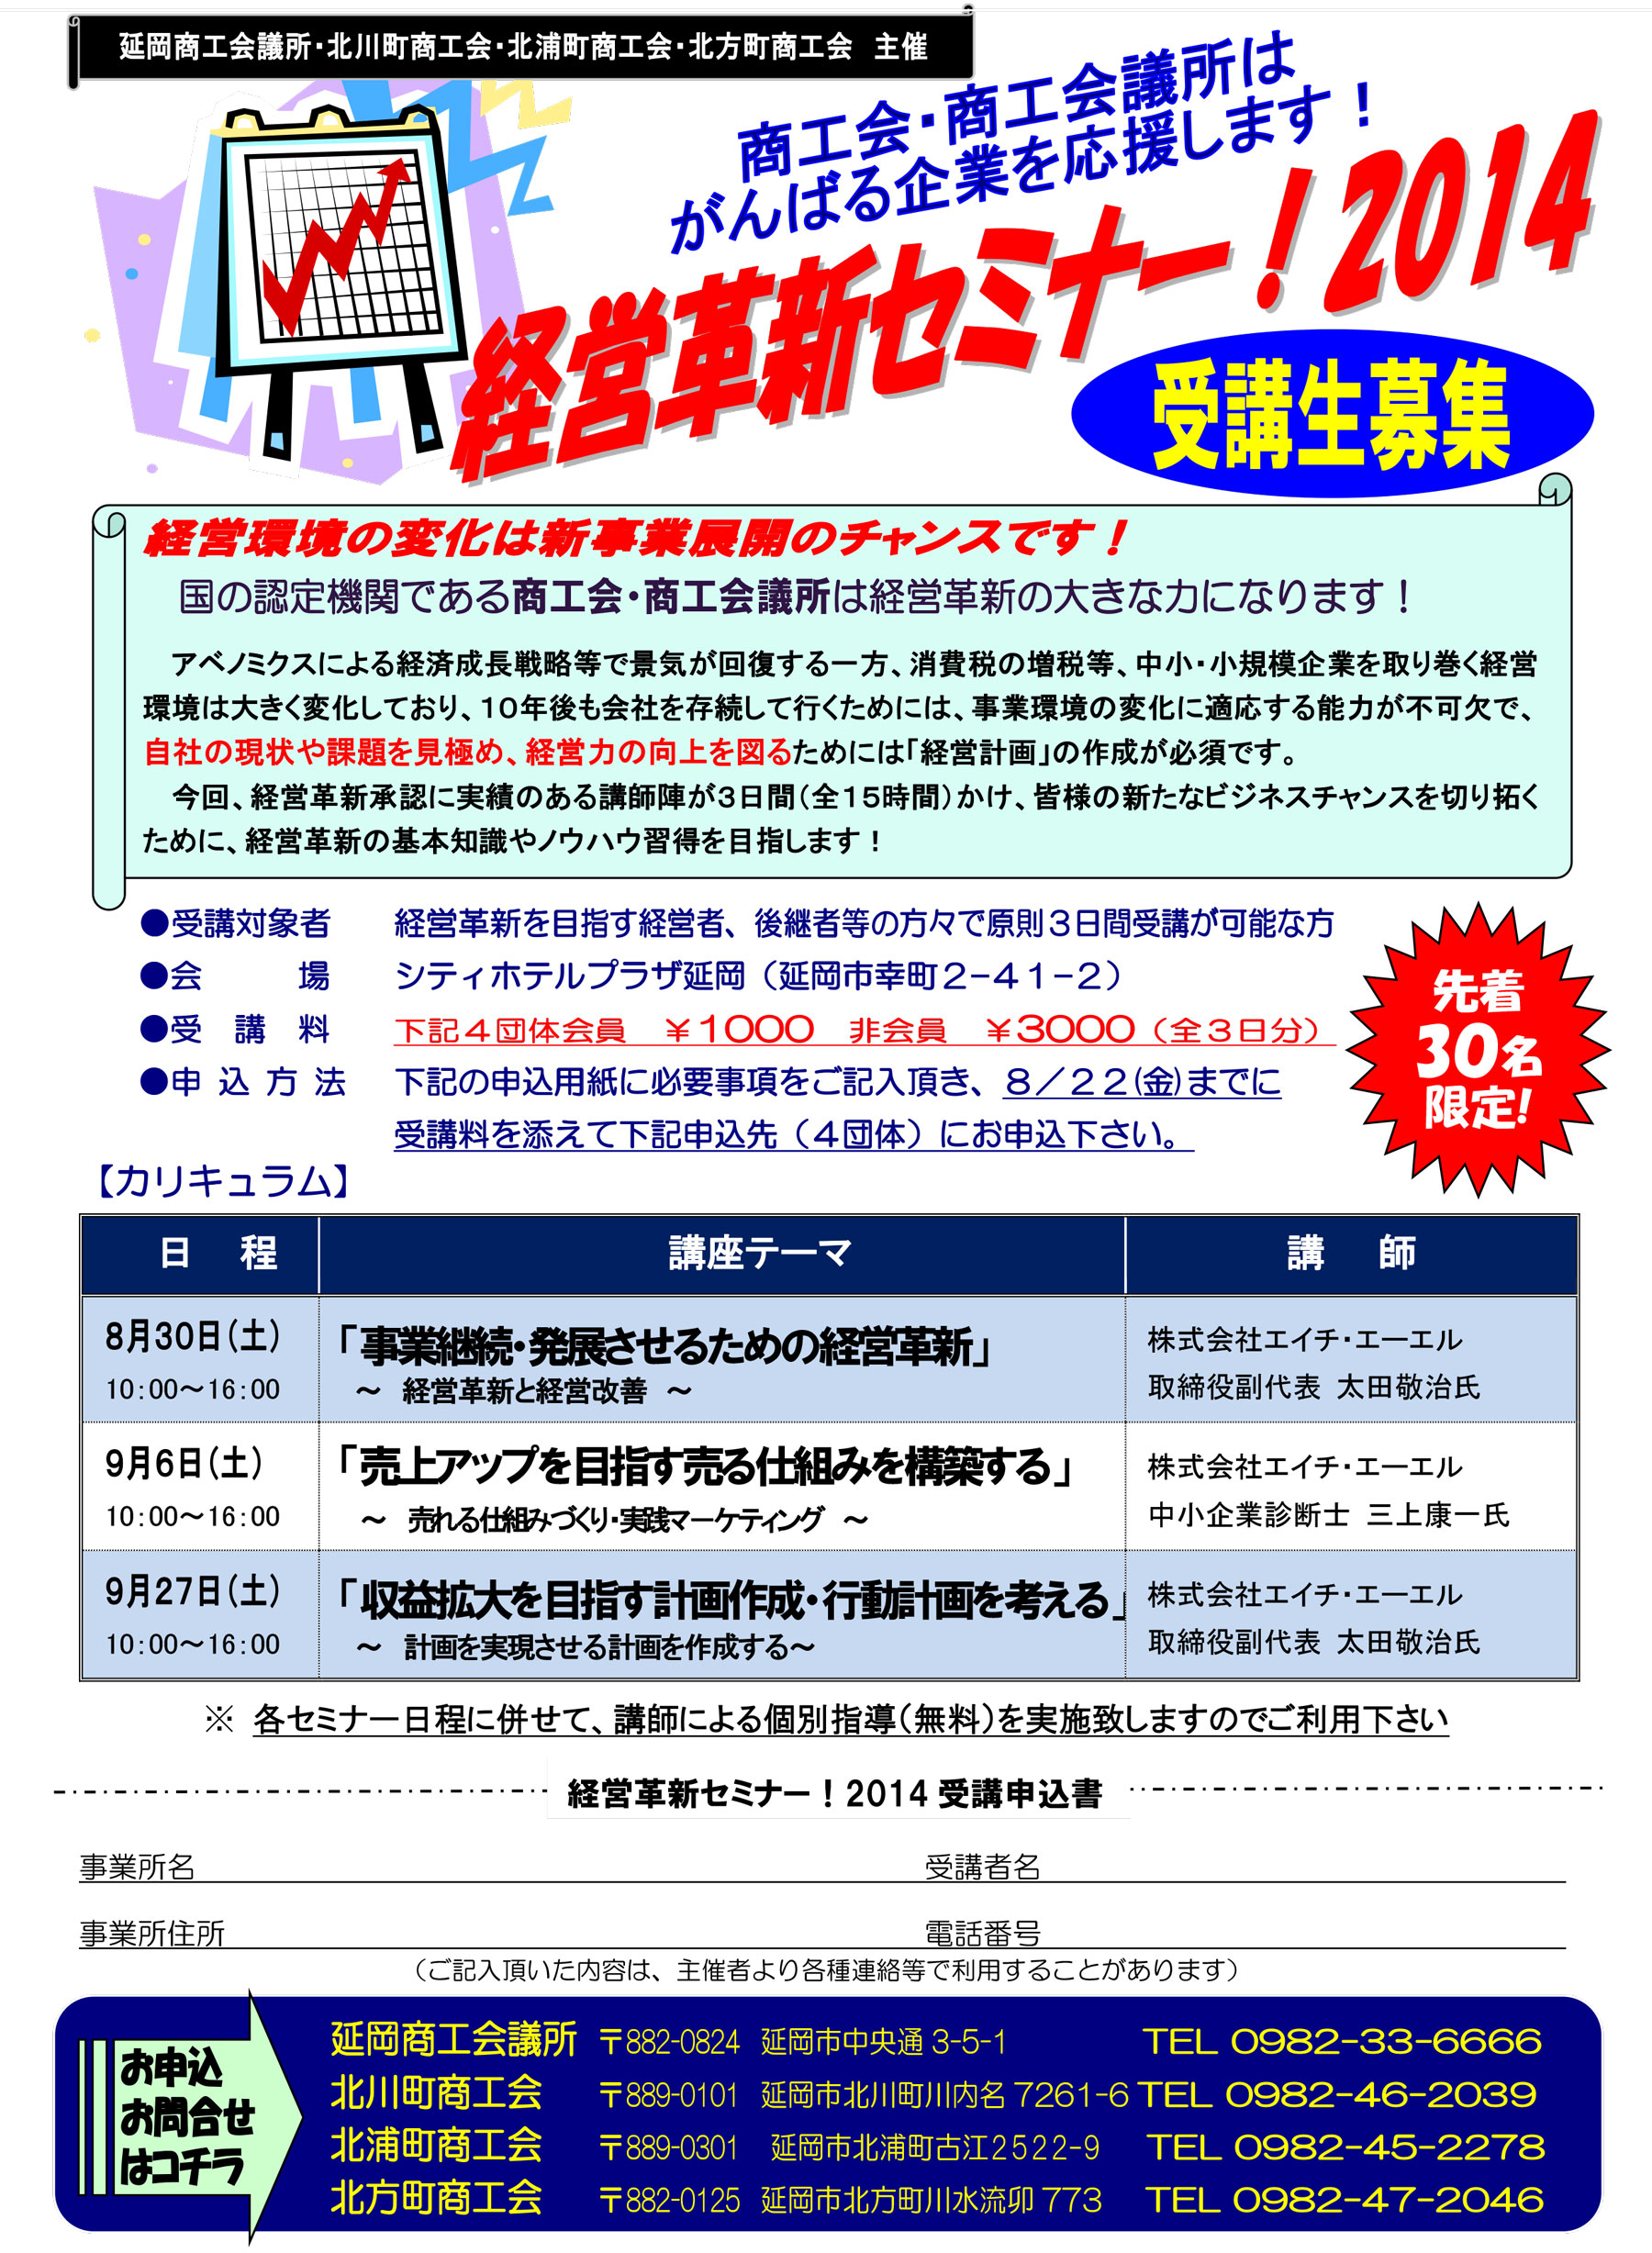 宮崎県経営革新セミナー2014